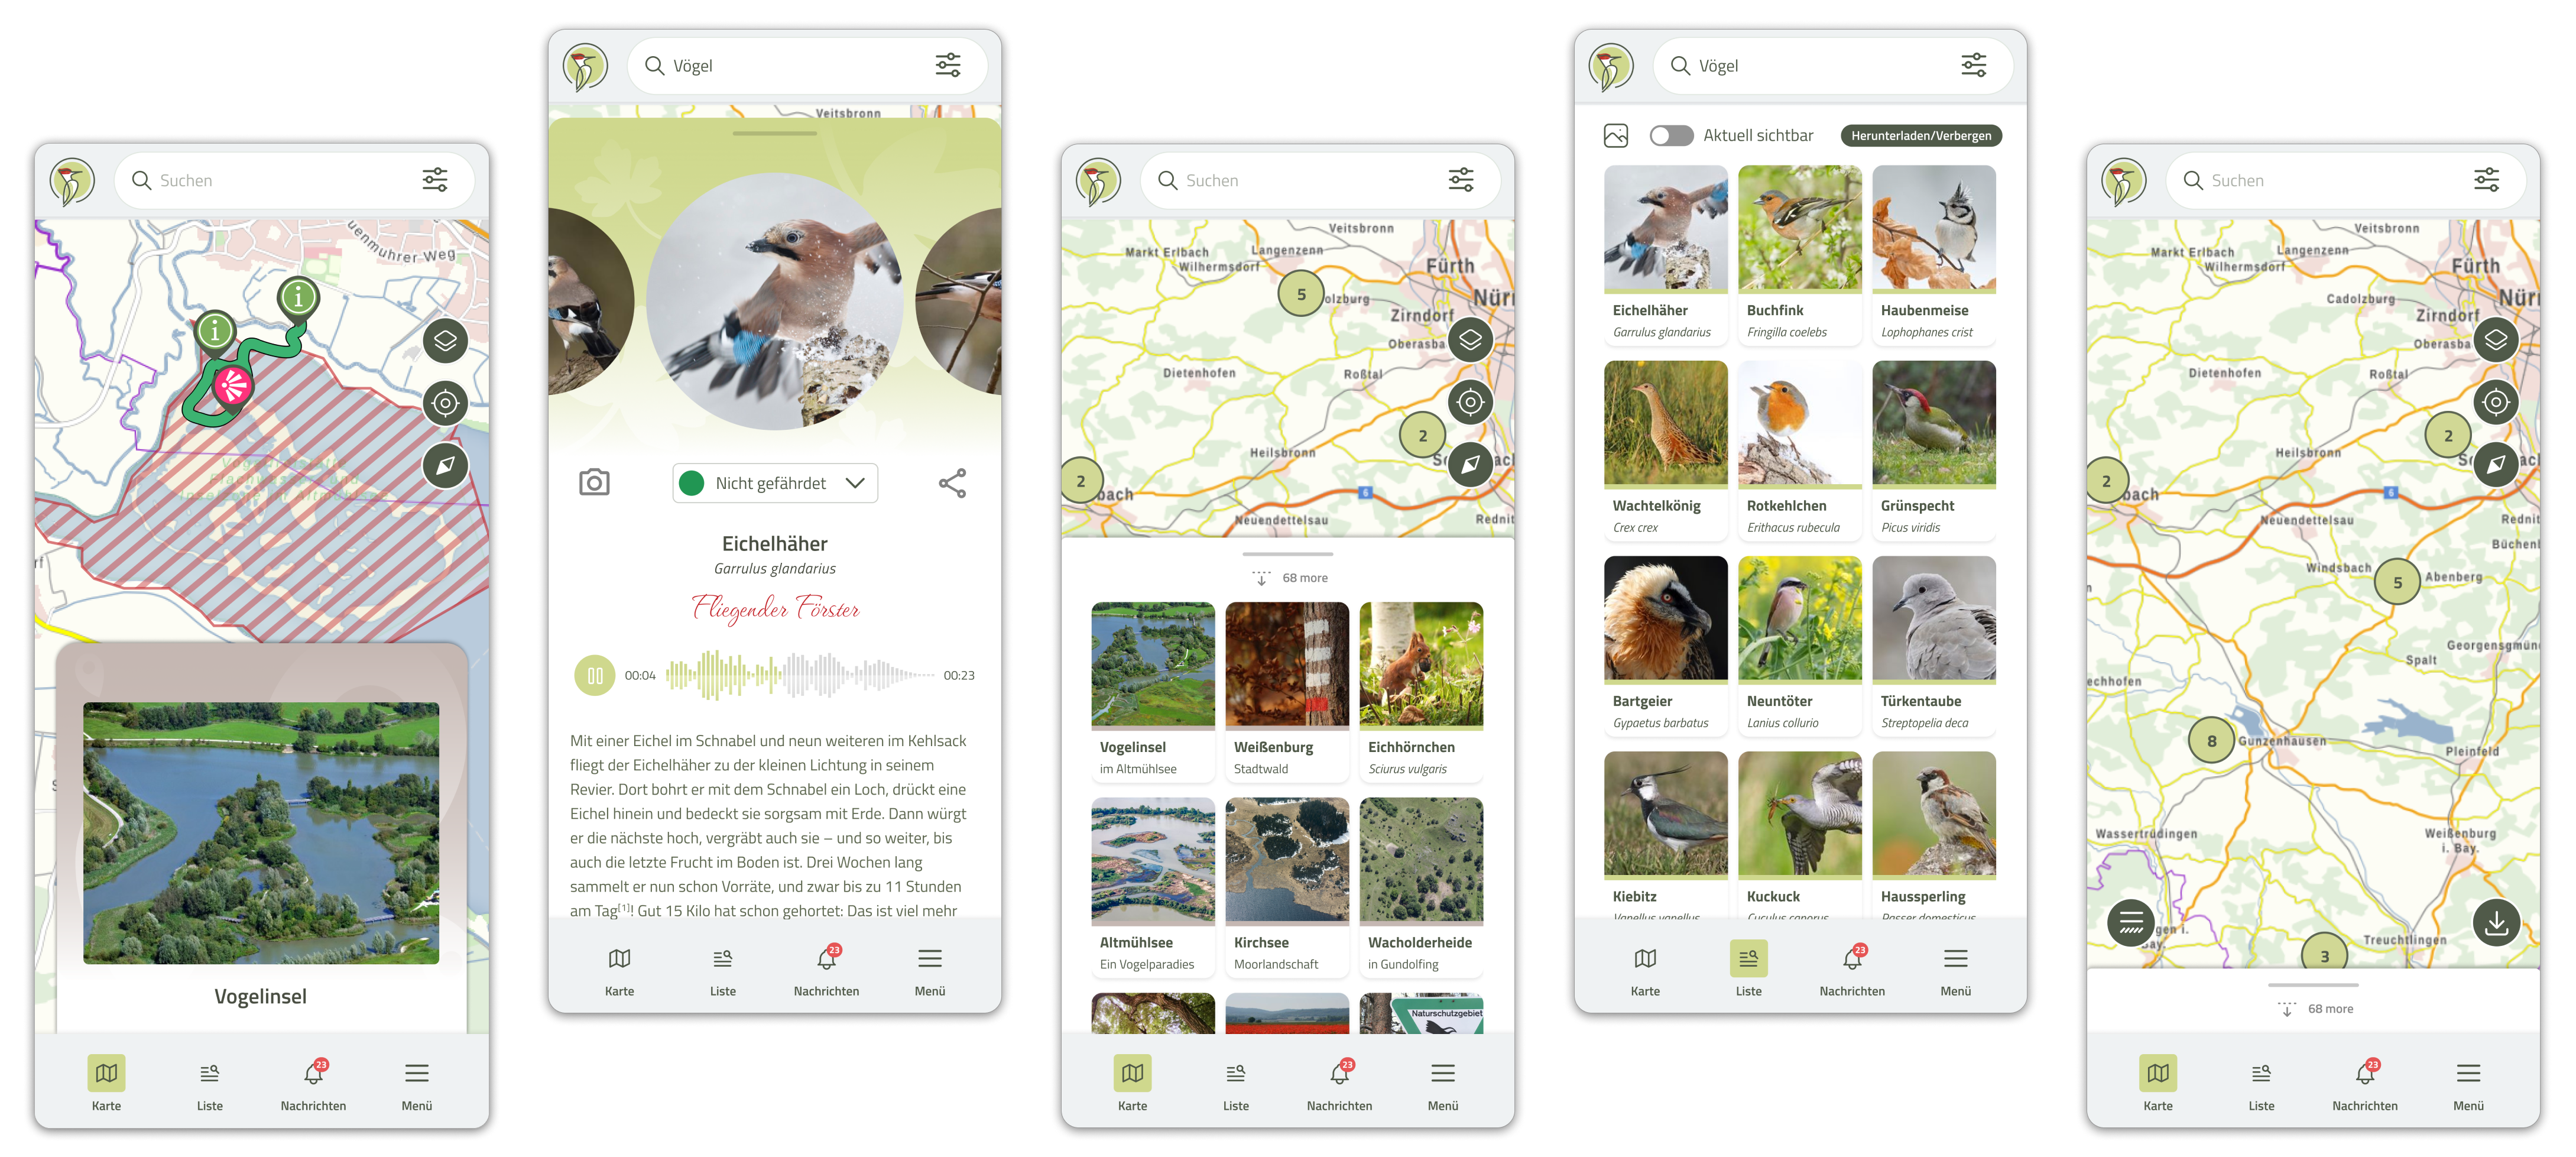 Bildschirmdarstellungen von der App mit unter anderem Lageinformationen zu interessanten Beobachtungspunkten für Pflanzen und Tiere